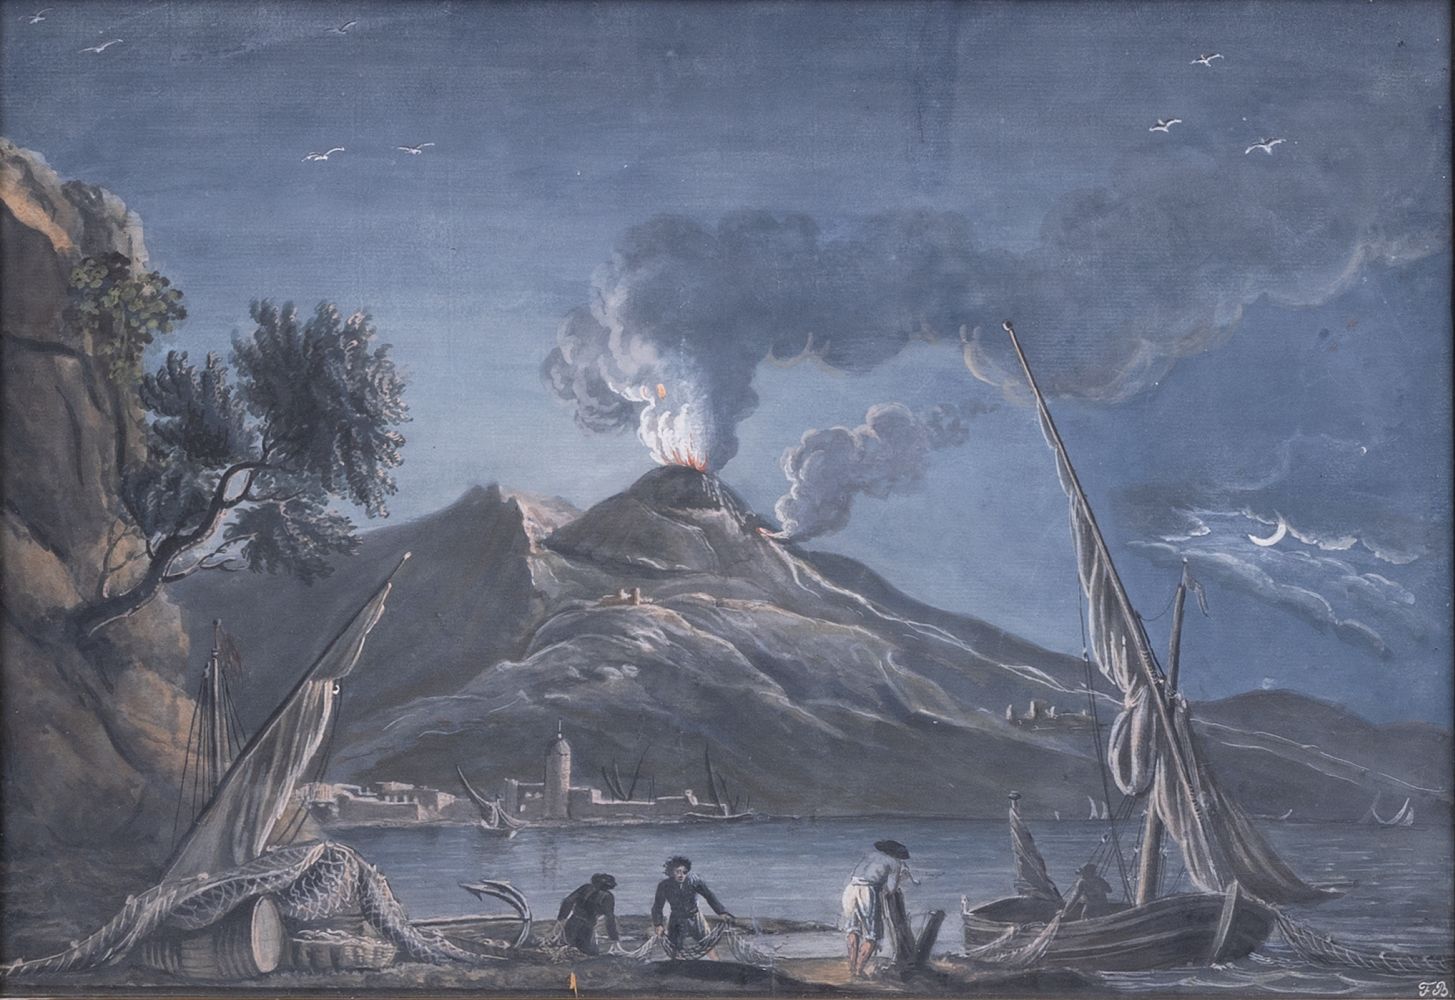 Eruption of Mount Vesuvius